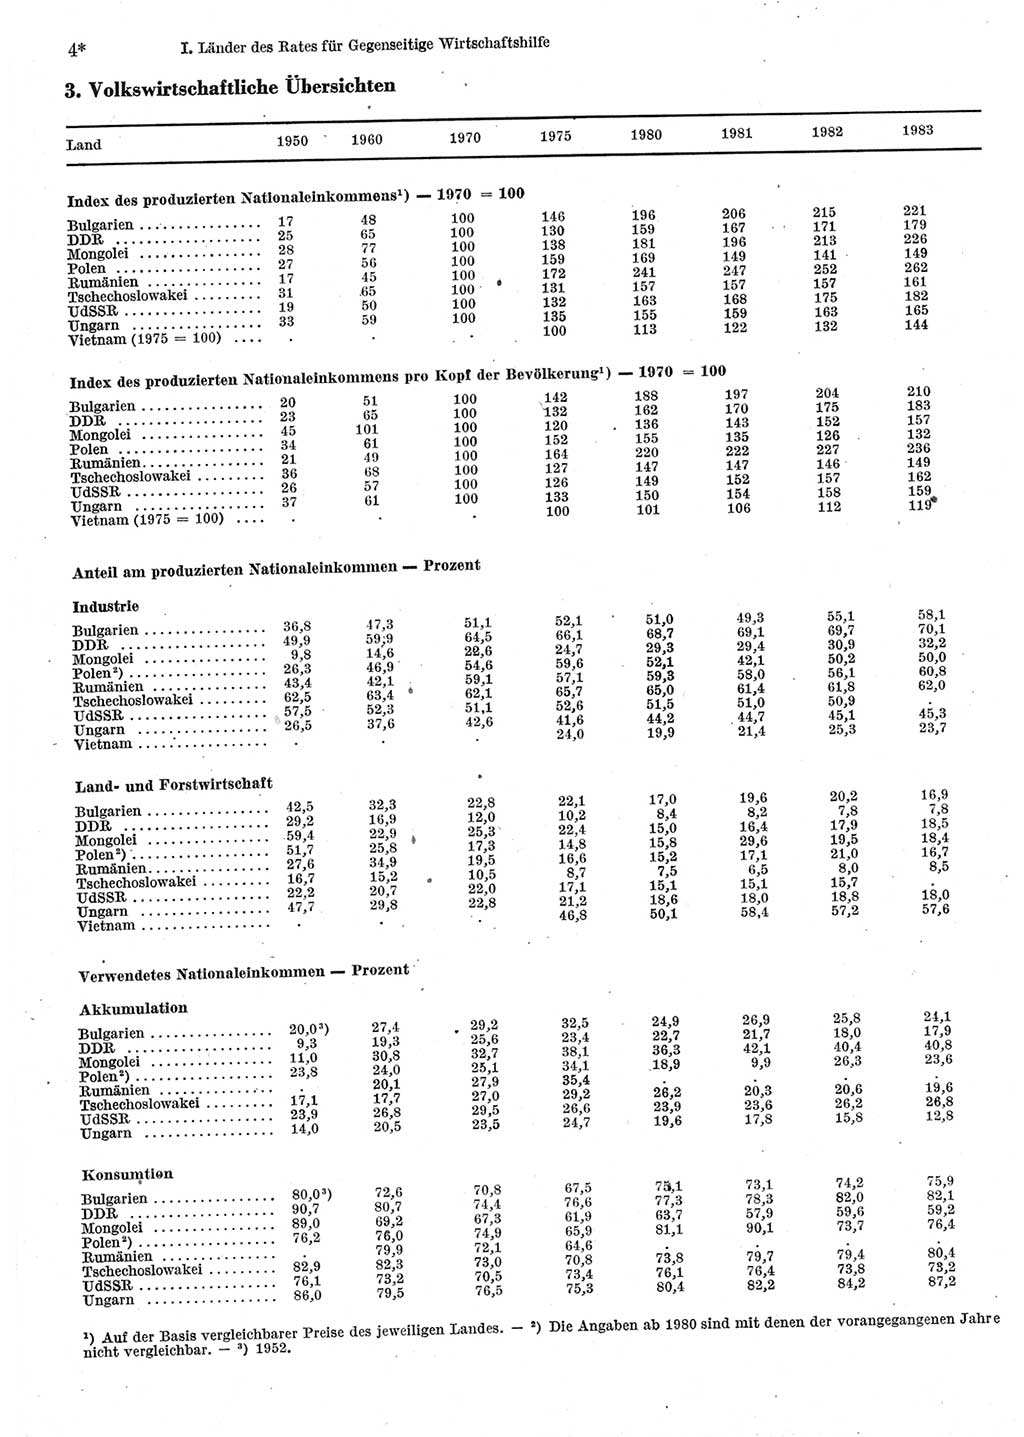 Statistisches Jahrbuch der Deutschen Demokratischen Republik (DDR) 1985, Seite 4 (Stat. Jb. DDR 1985, S. 4)